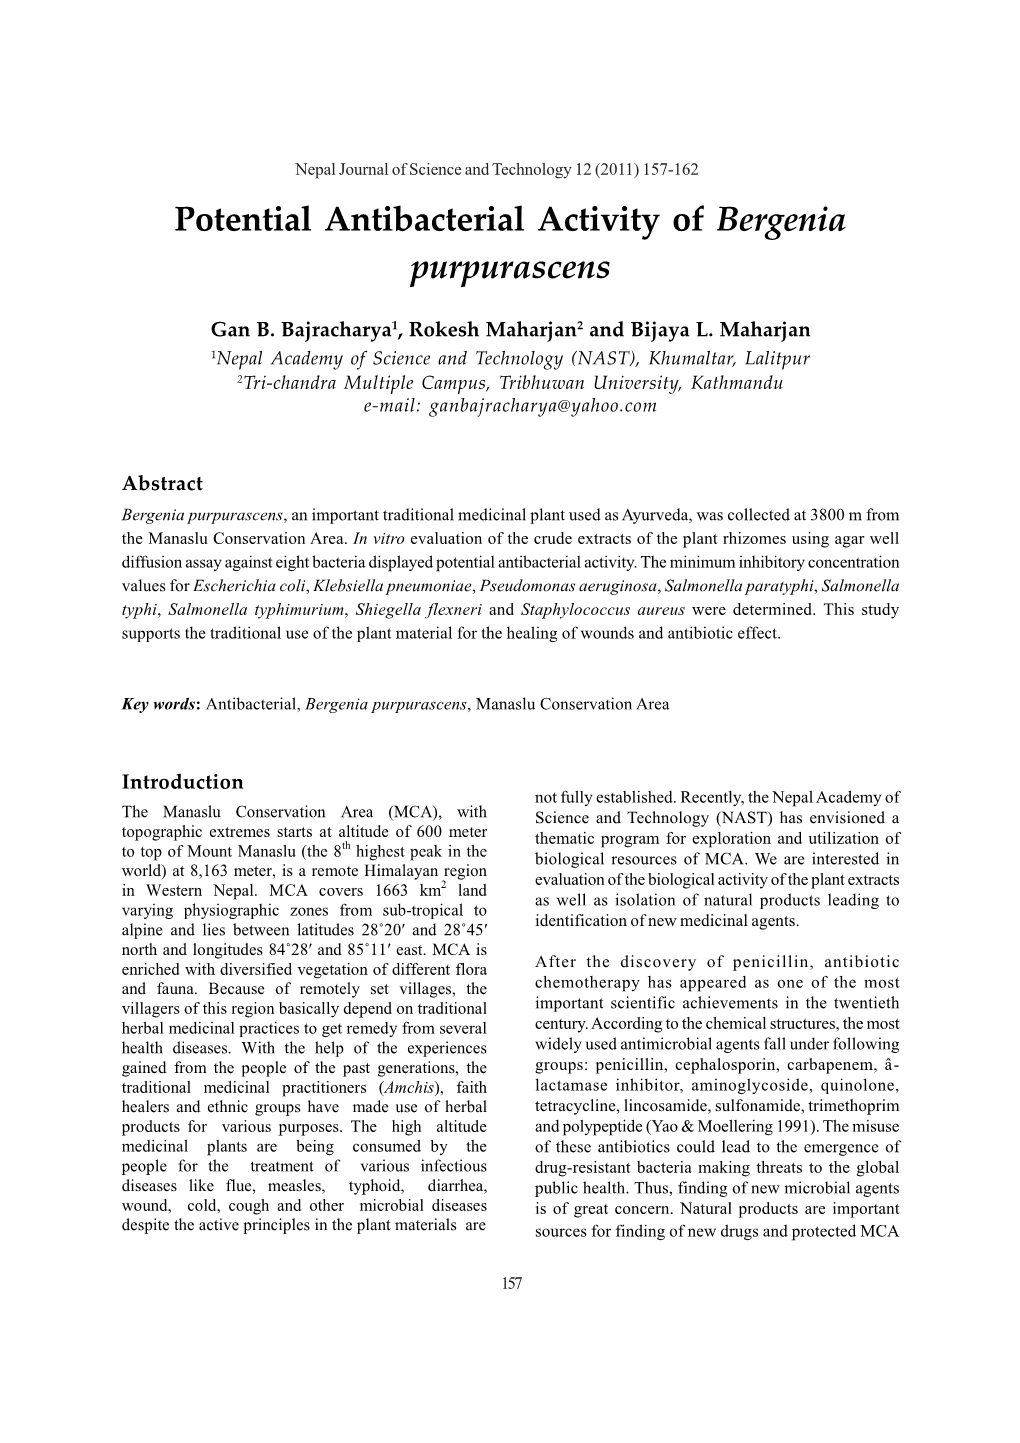 Potential Antibacterial Activity of Bergenia Purpurascens